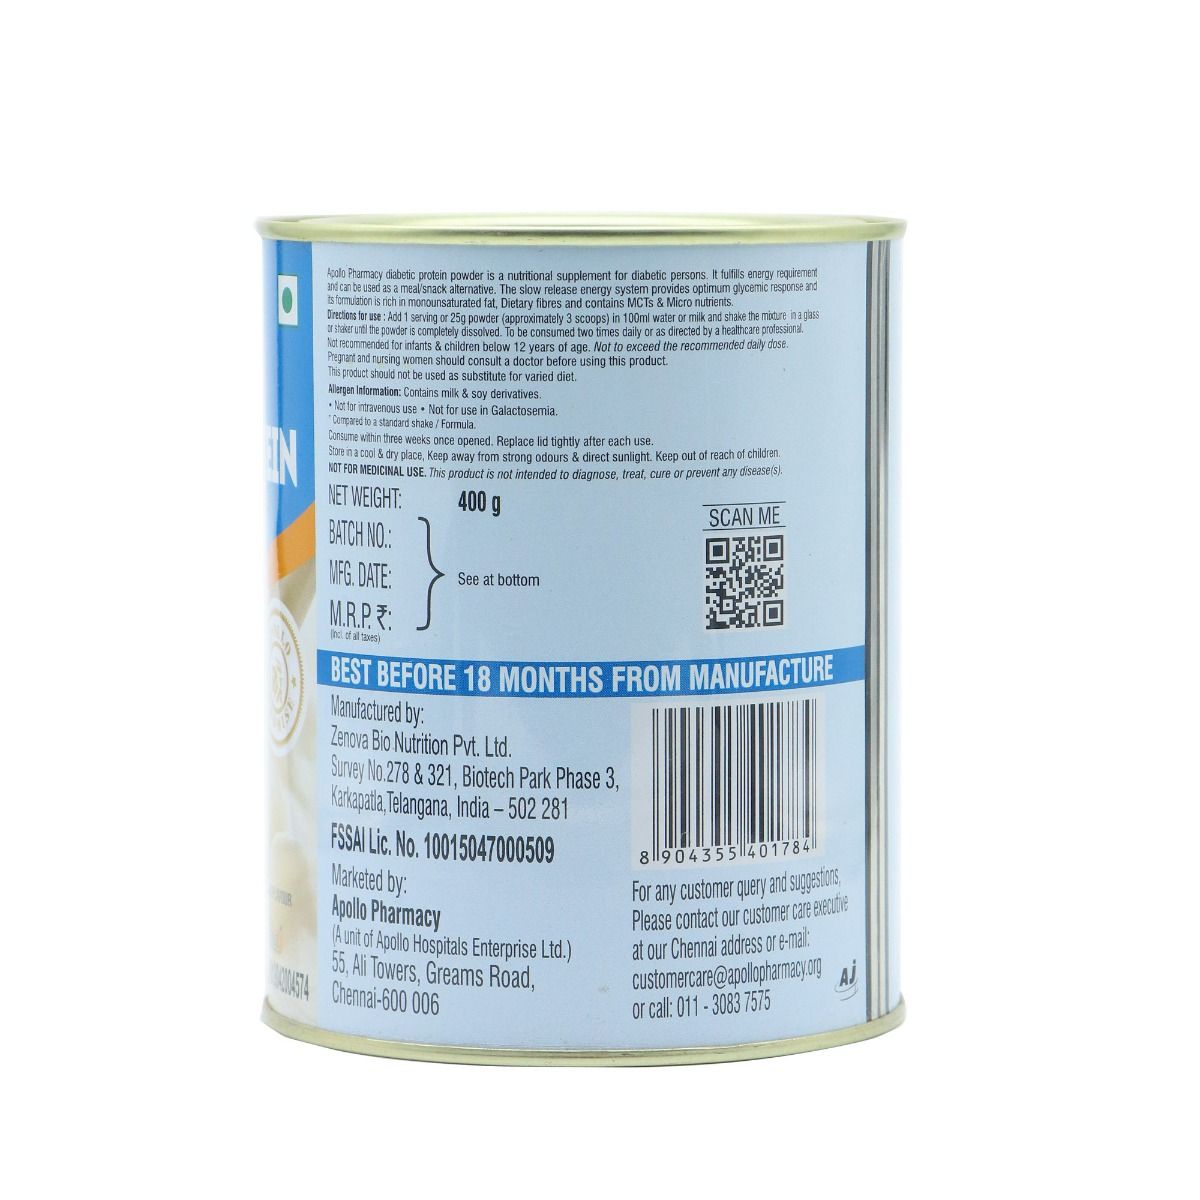 Apollo Pharmacy Diabetic Protein Powder Vanilla Flavour, 400 gm, Pack of 1 